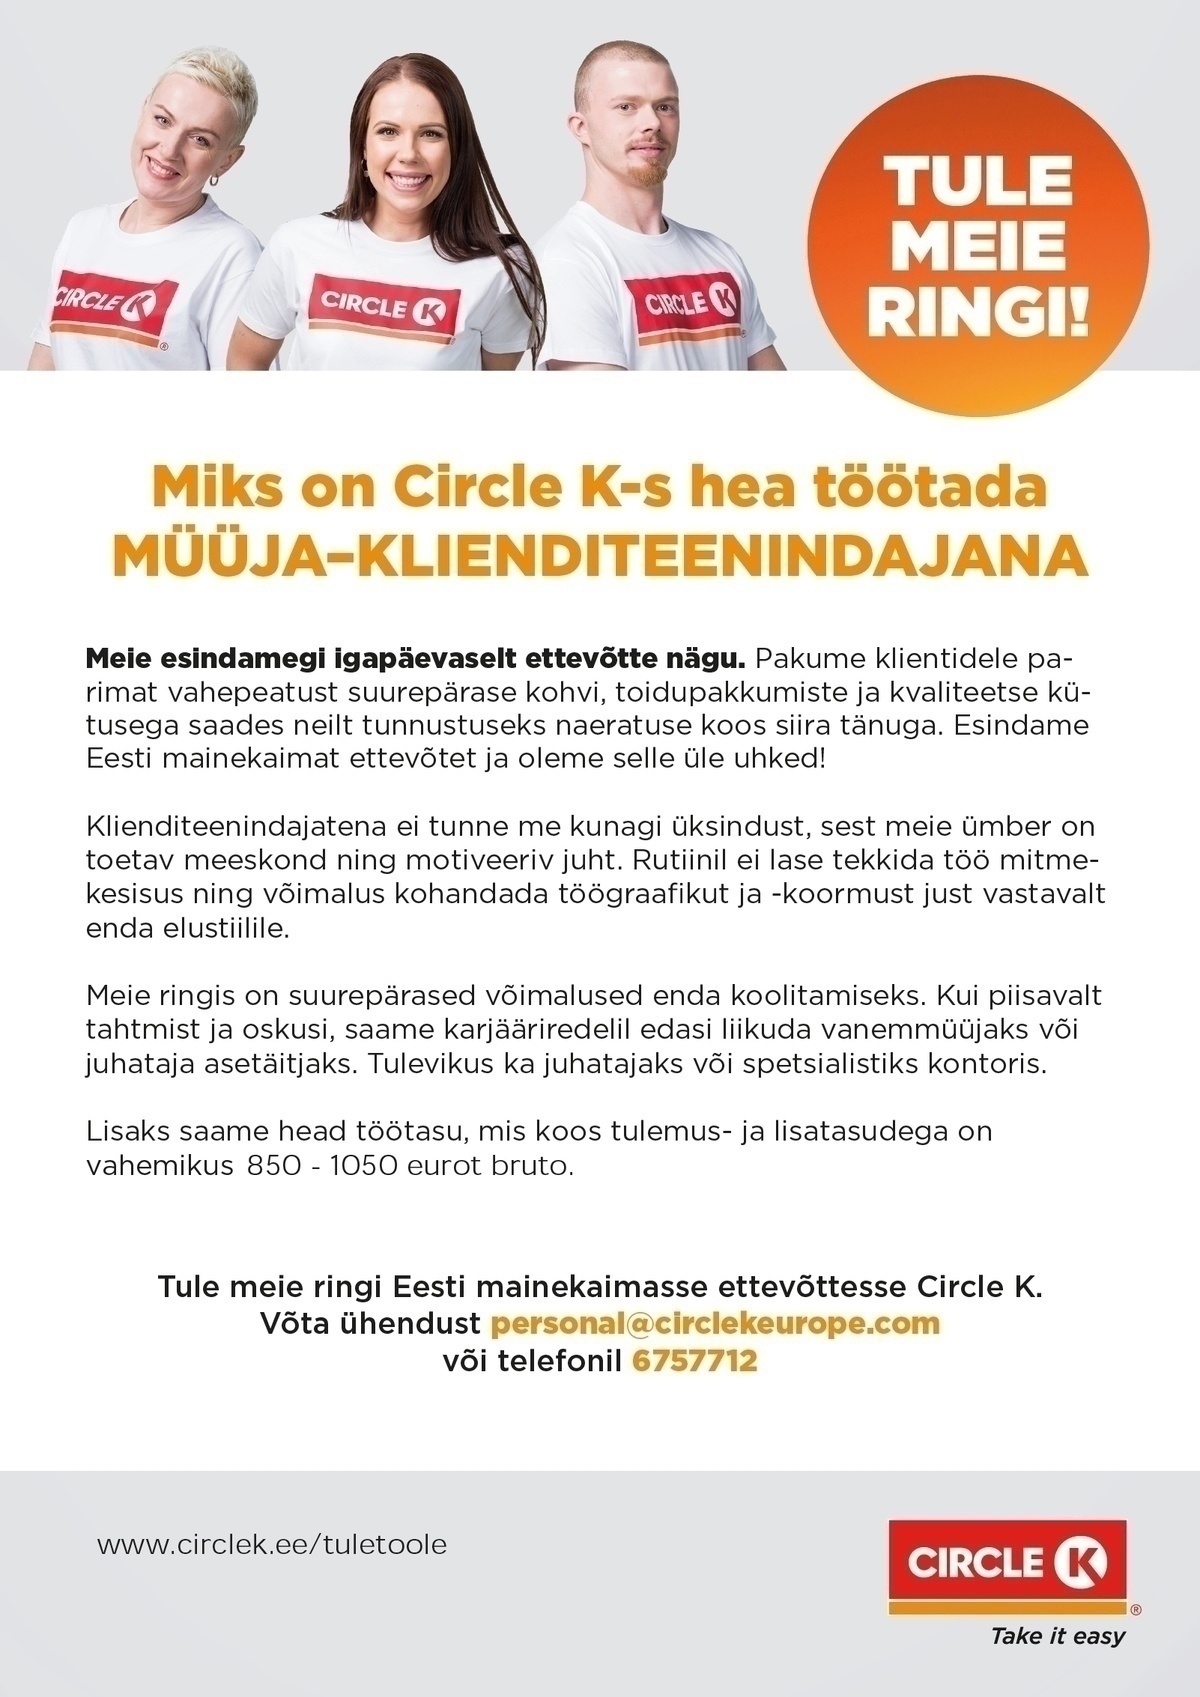 Circle K Eesti AS Müüja-klienditeenindaja Tallinna Sõle teenindusjaama